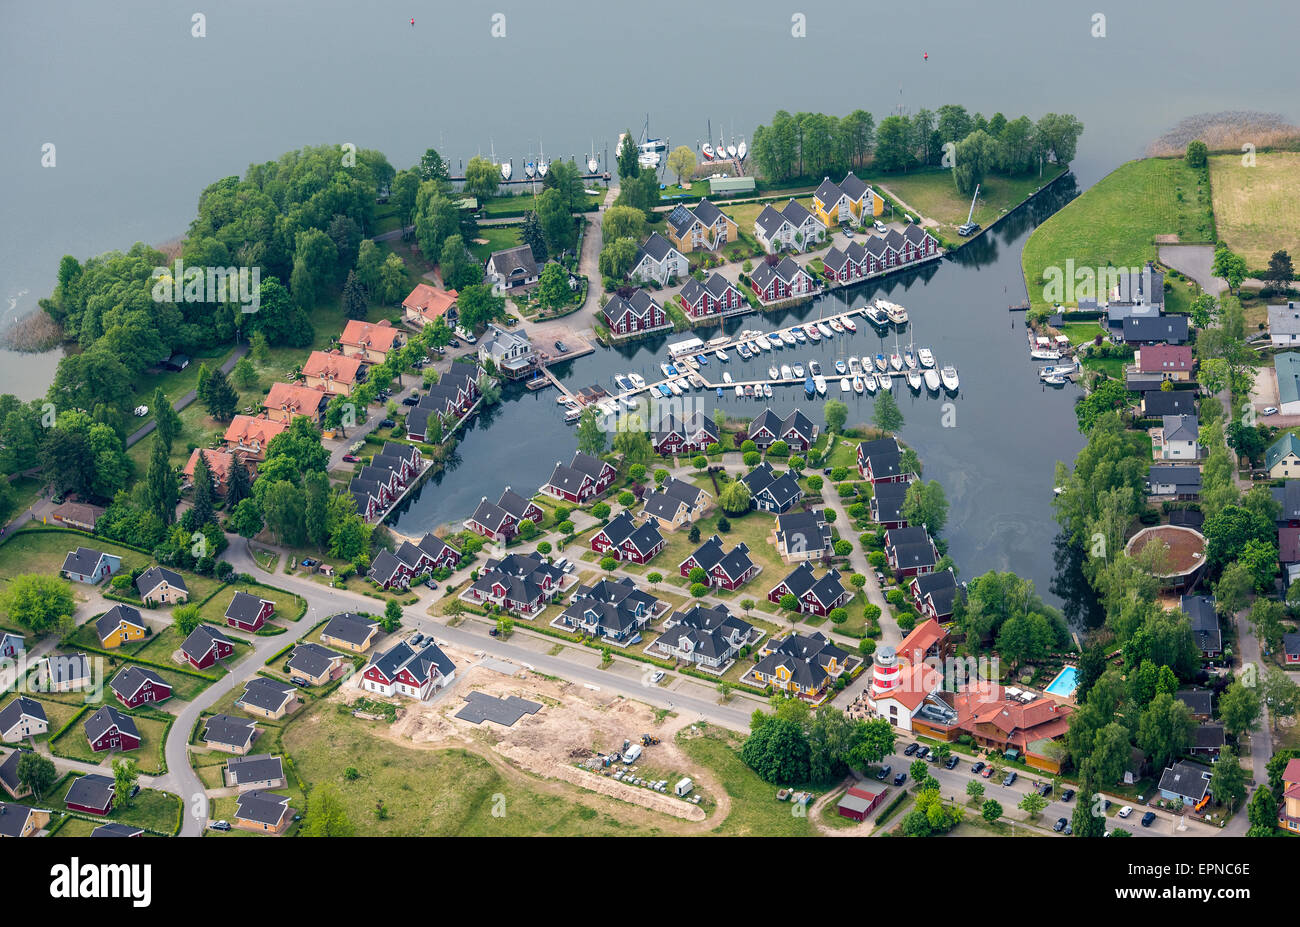 Wendisch Rietz, Allemagne. 19 mai, 2015. Une vue aérienne montre le parc de vacances Scharmuetzelsee avec ses nombreuses maisons de vacances sur la rive sud-ouest du lac Scharmuetzelsee à Wendisch Rietz, Allemagne, 19 mai 2015. Photo : PATRICK PLEUL/dpa/Alamy Live News Banque D'Images